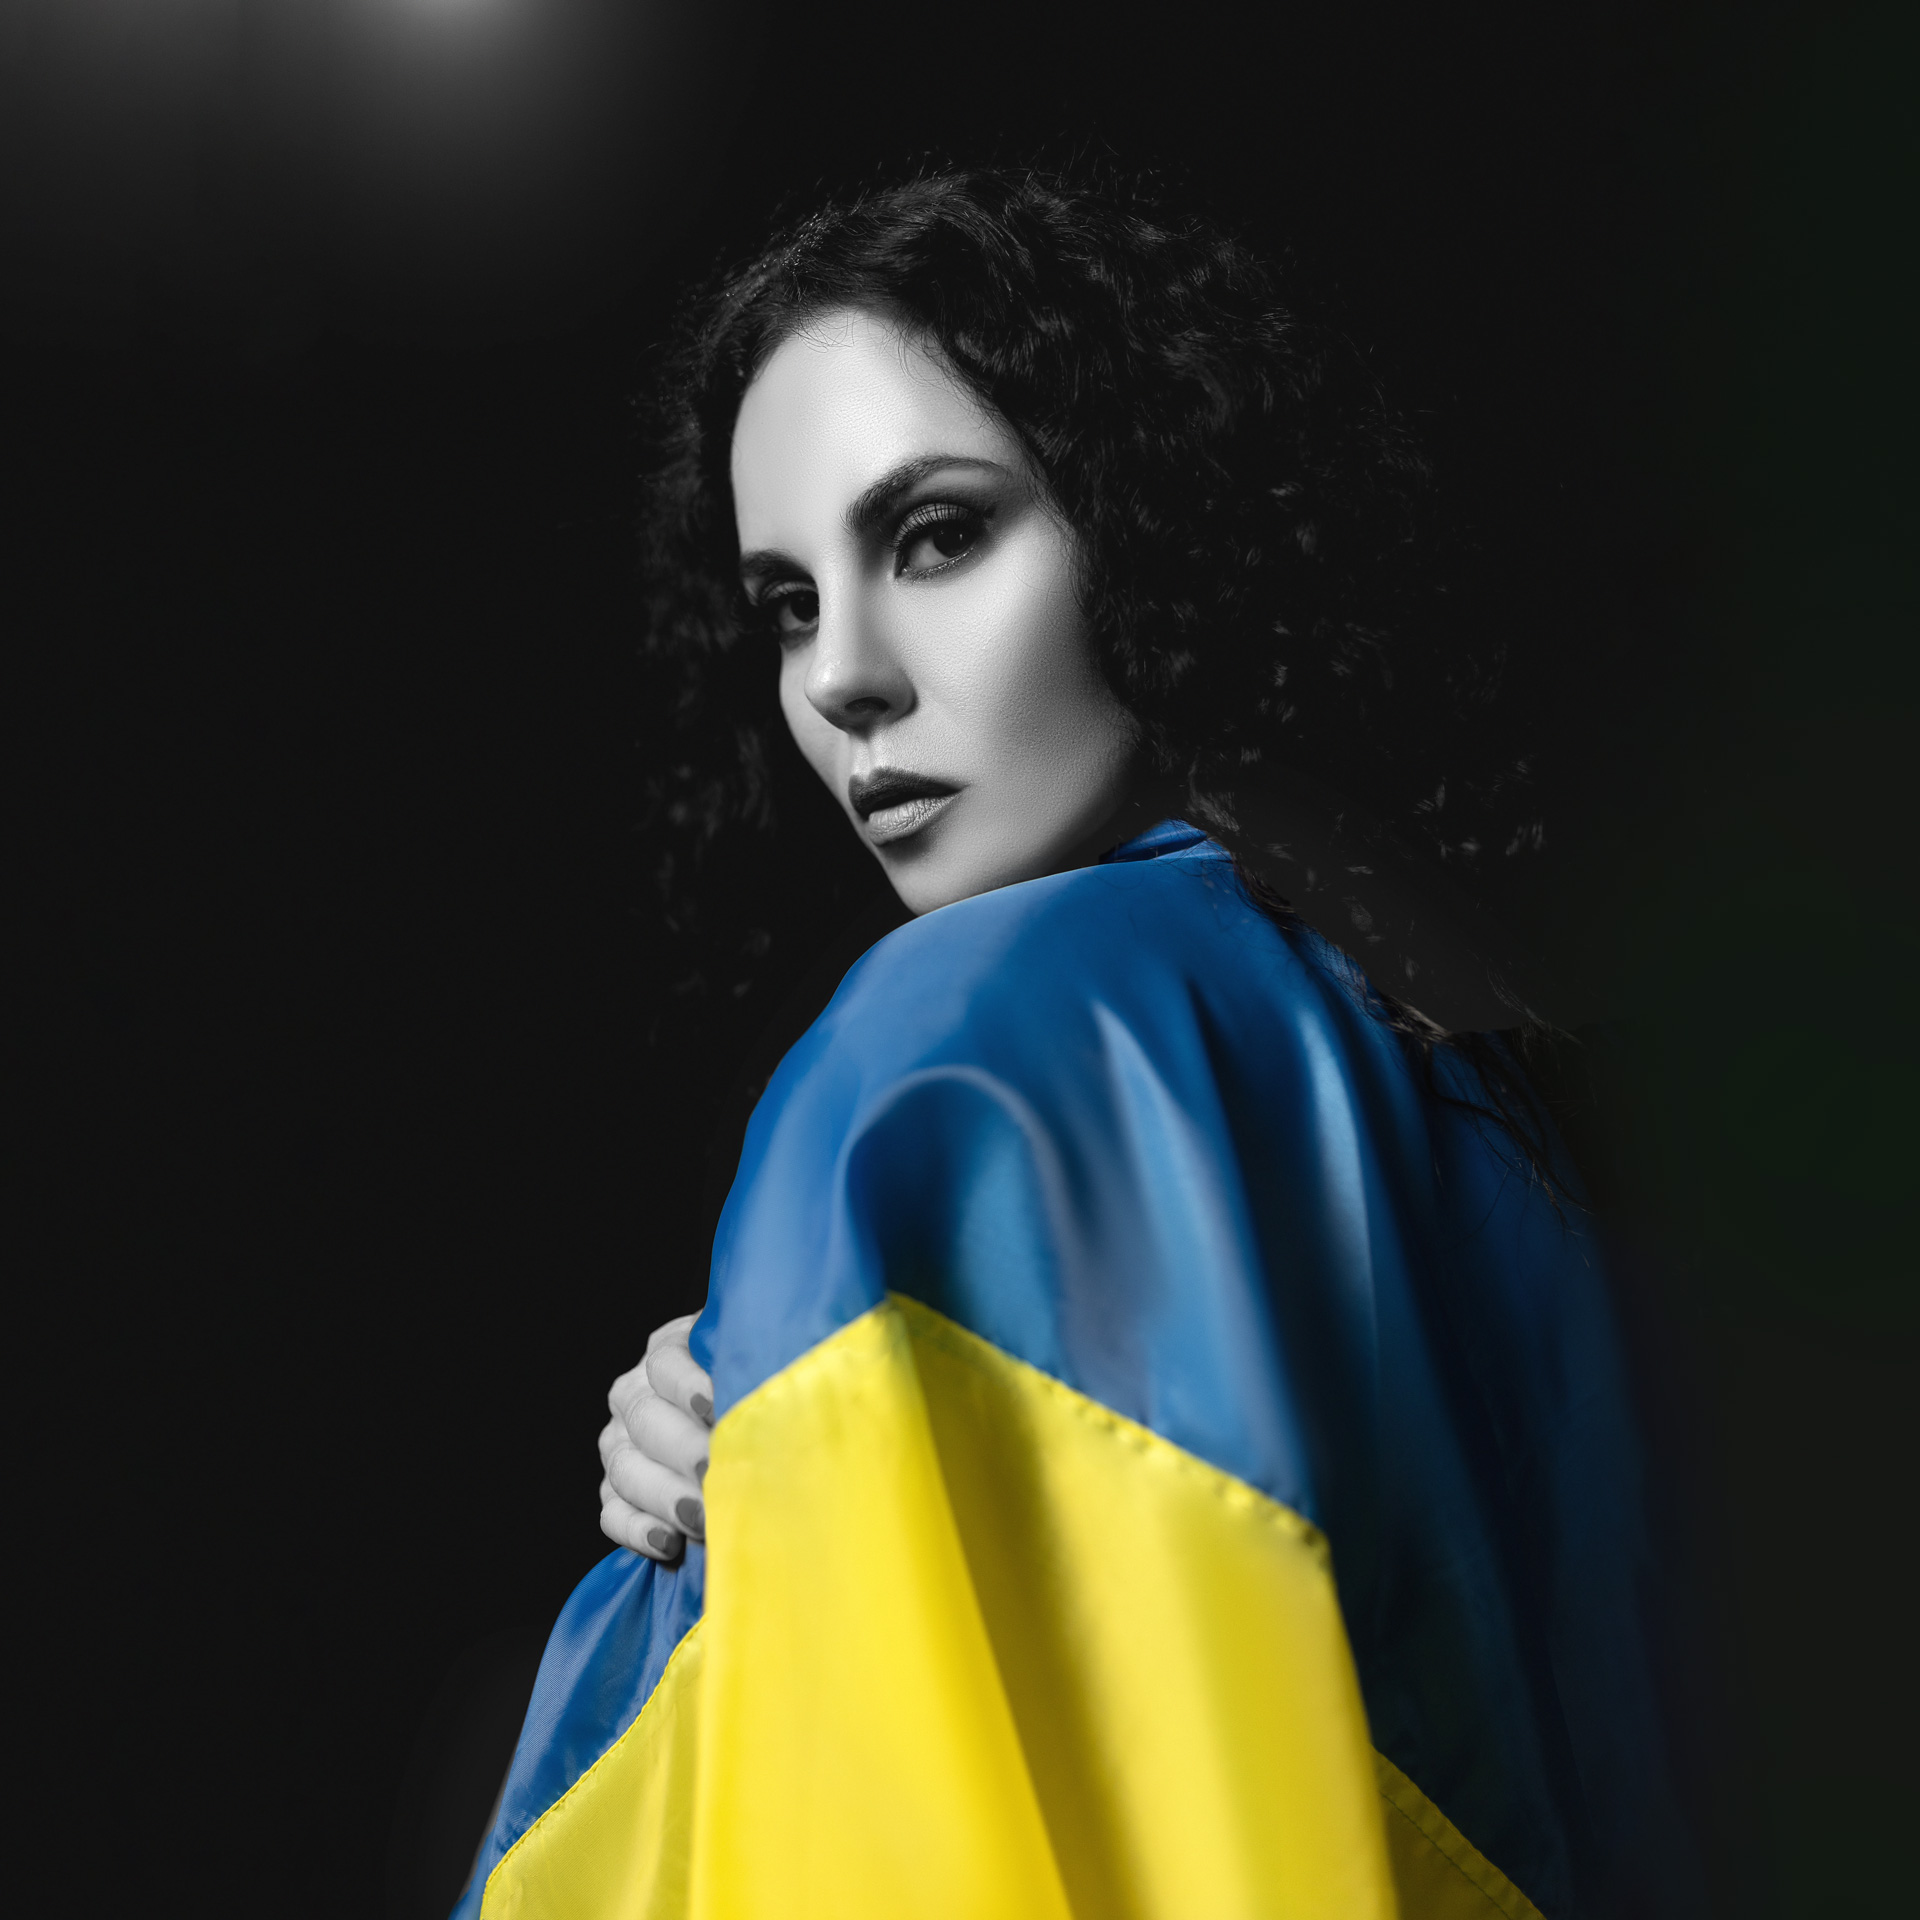 NK звернулася до світу з новою піснею “You crying” аби закликати не замовчувати жорстокість в Україні